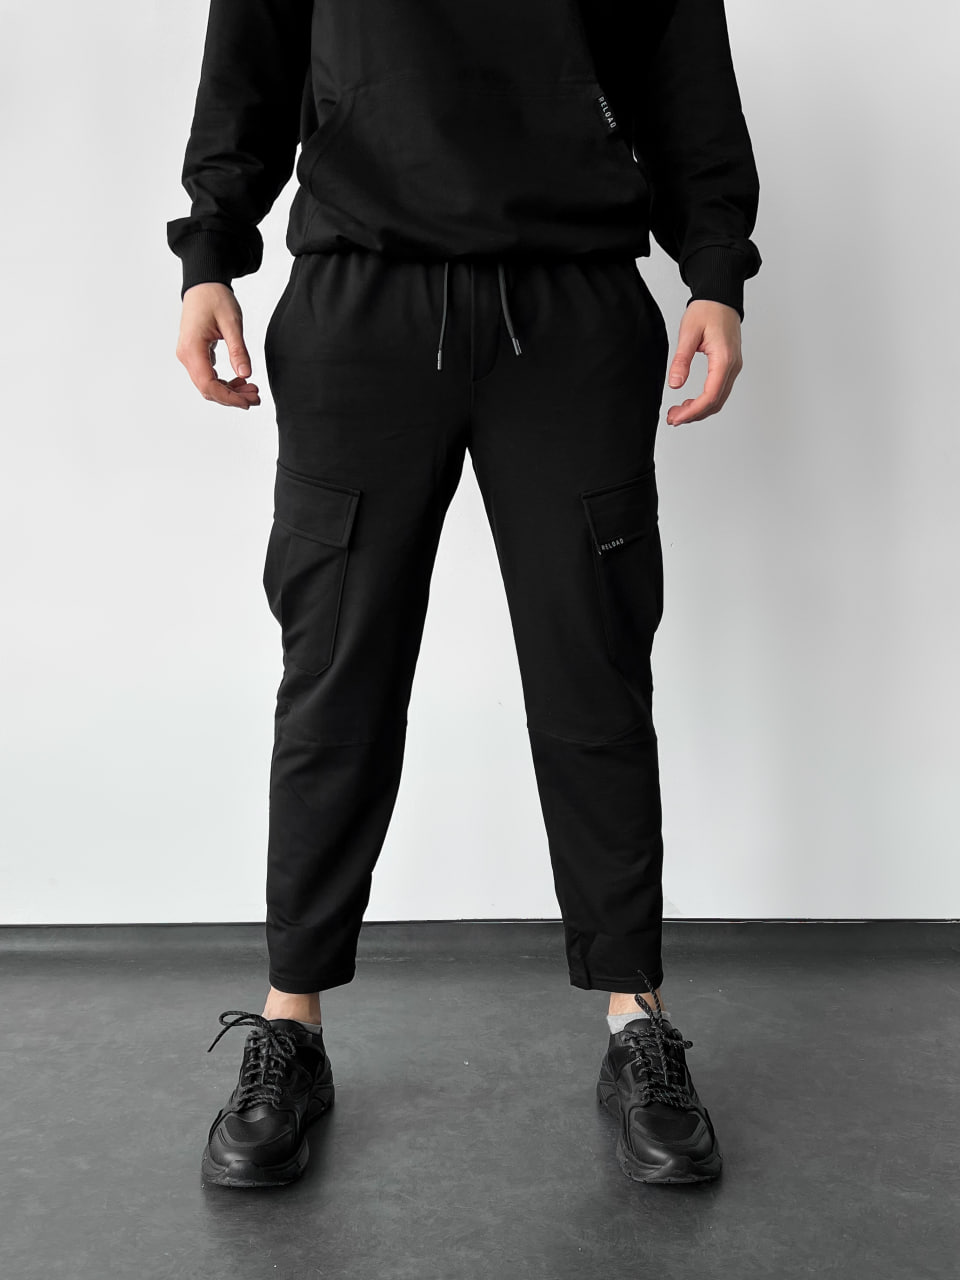 Чоловічі спортивні штани Reload Breethe, чорний - Фото 1